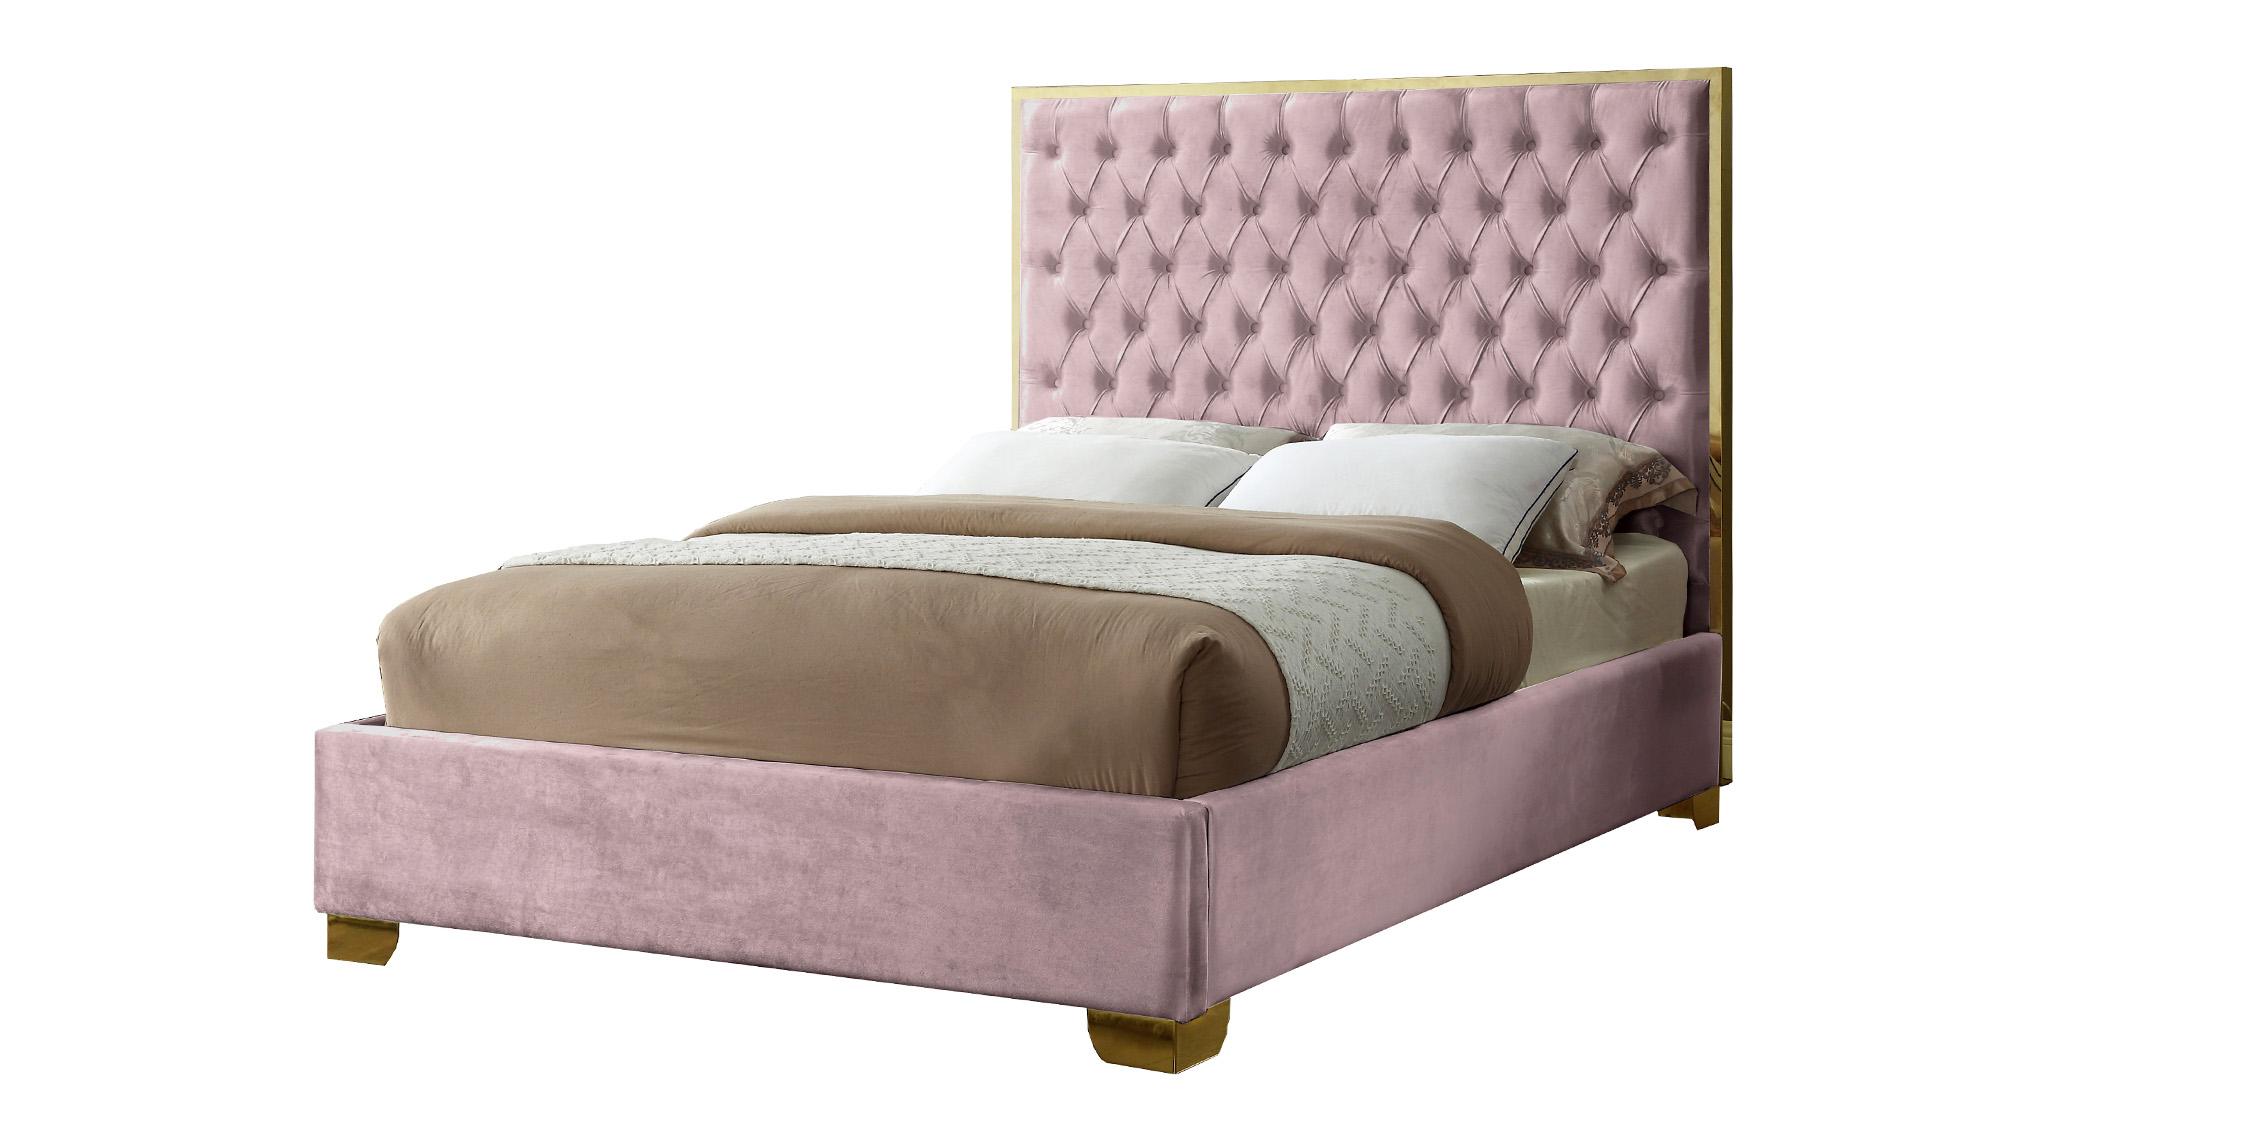 

    
Meridian Furniture LanaPink-K Platform Bed Pink LanaPink-K
